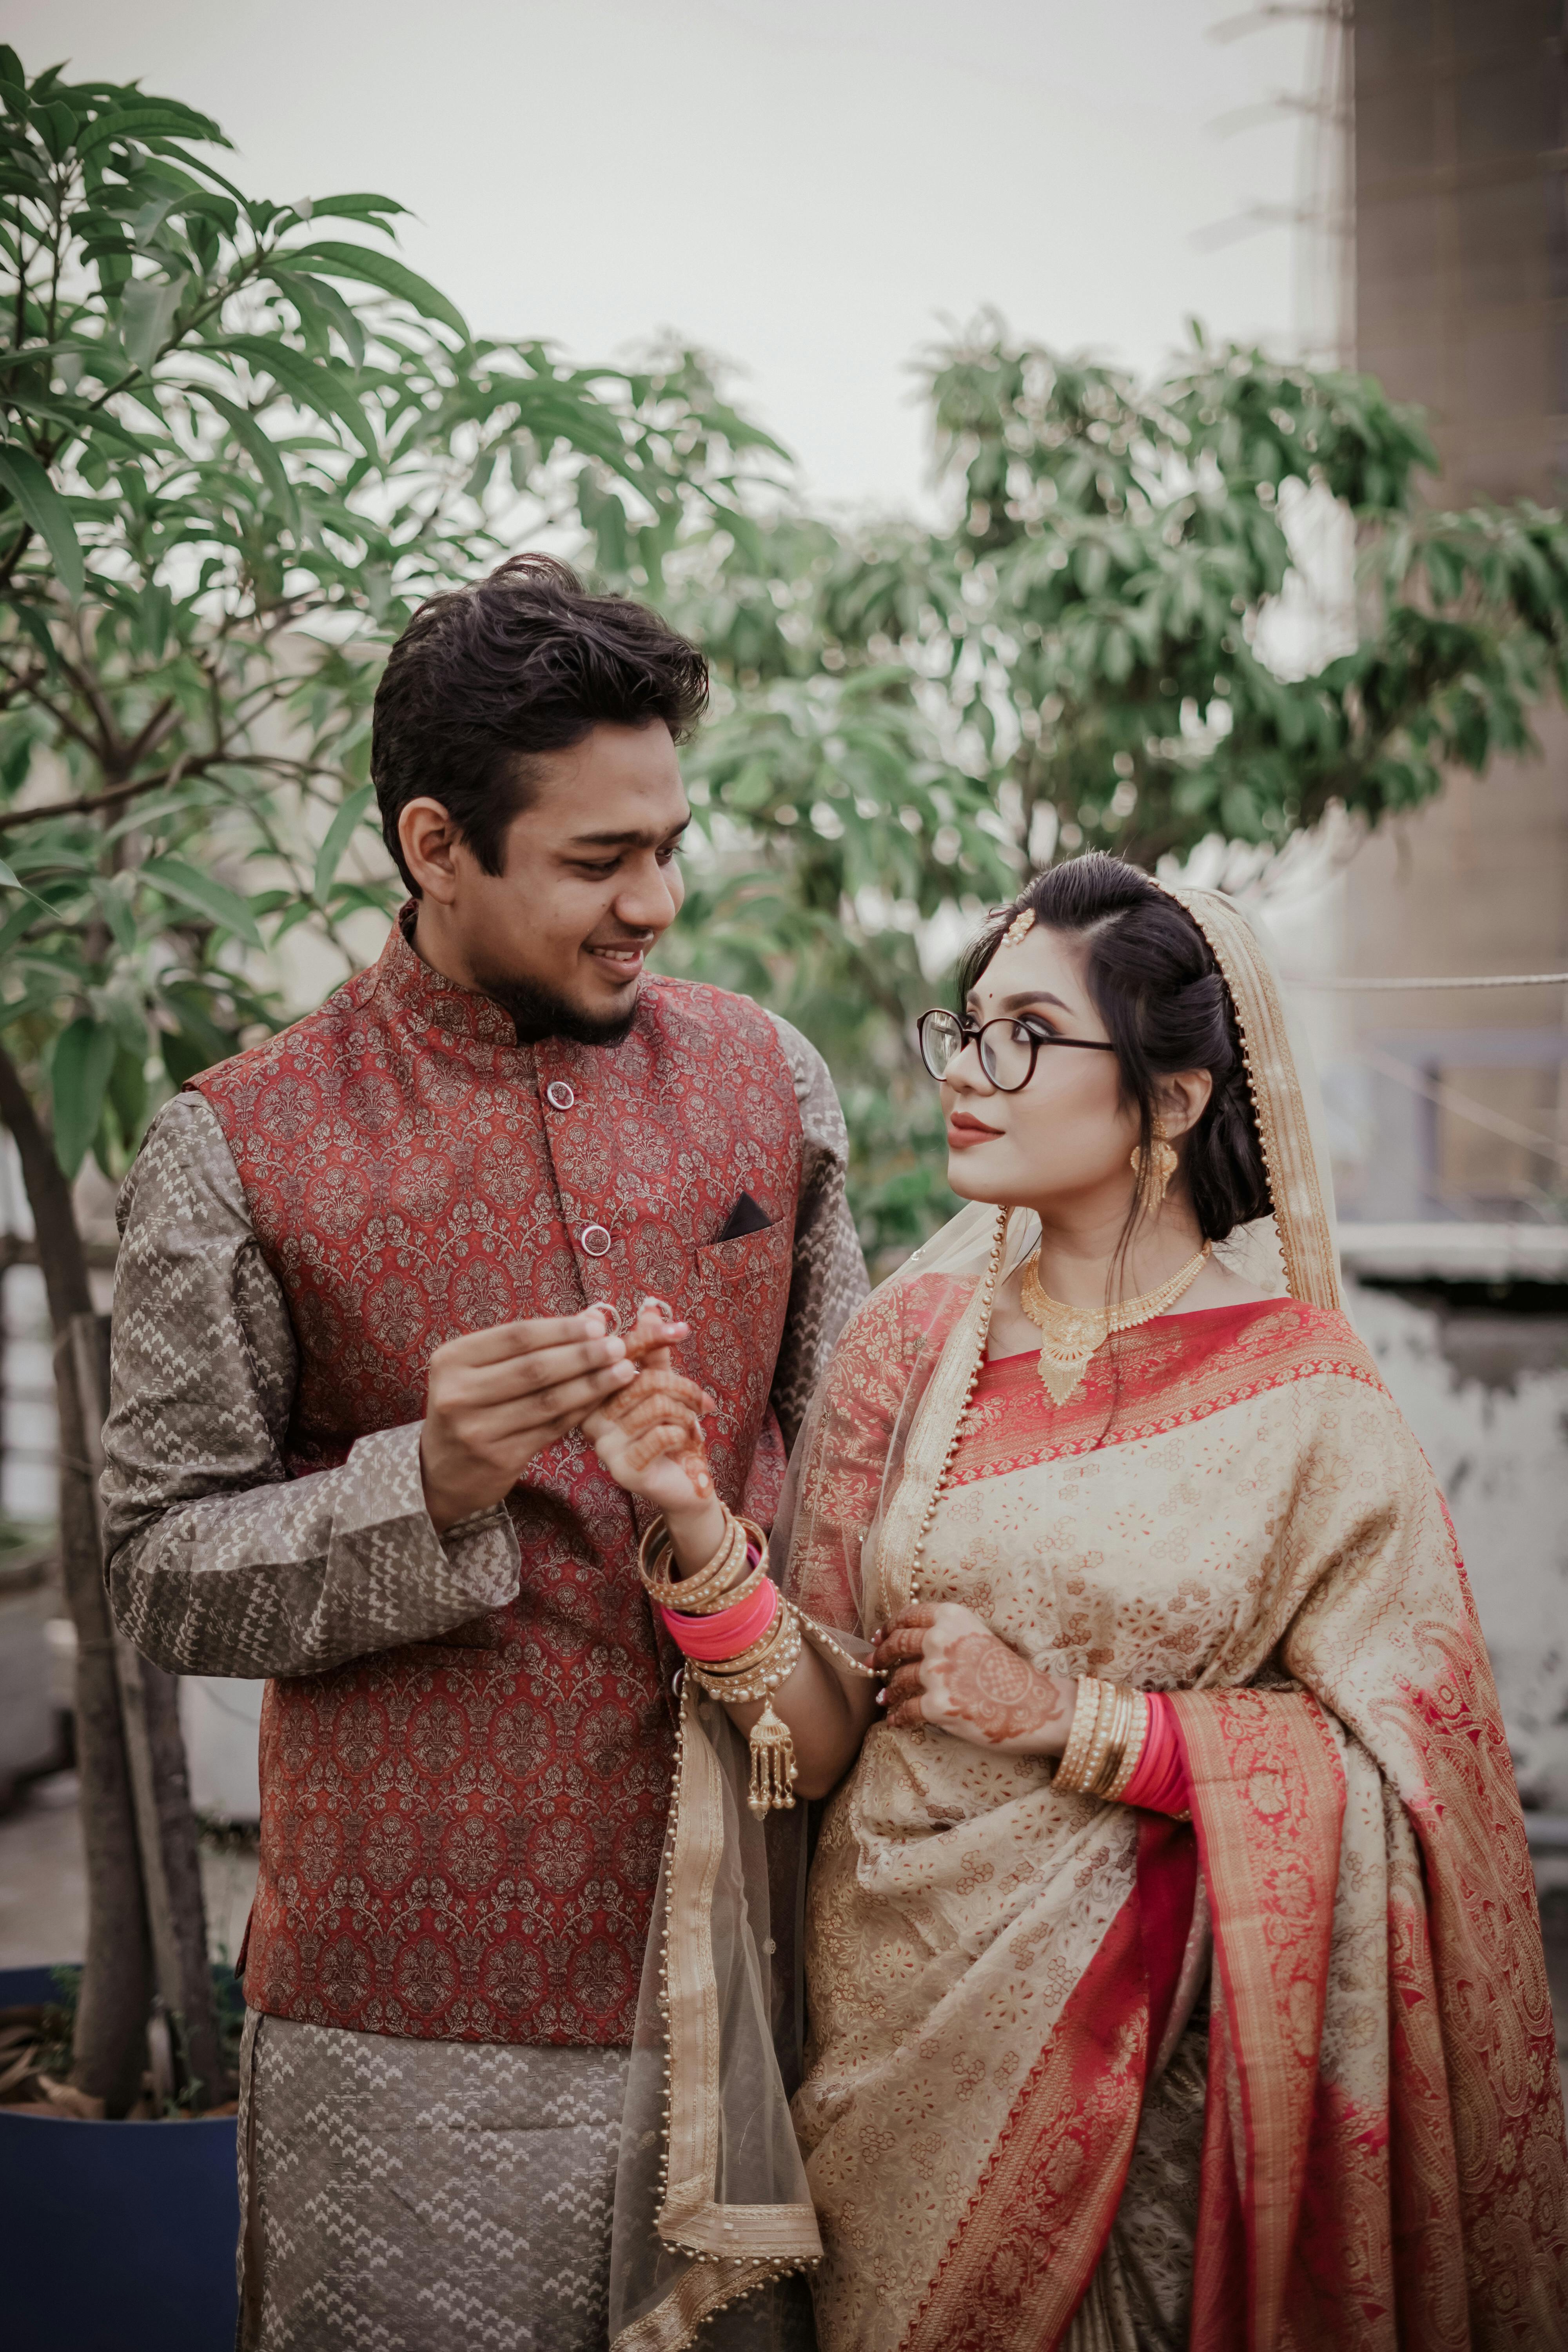 Best Bridal Lehenga designs this wedding season! | Photoshoot dress, Indian  photoshoot, Indian wedding photography poses